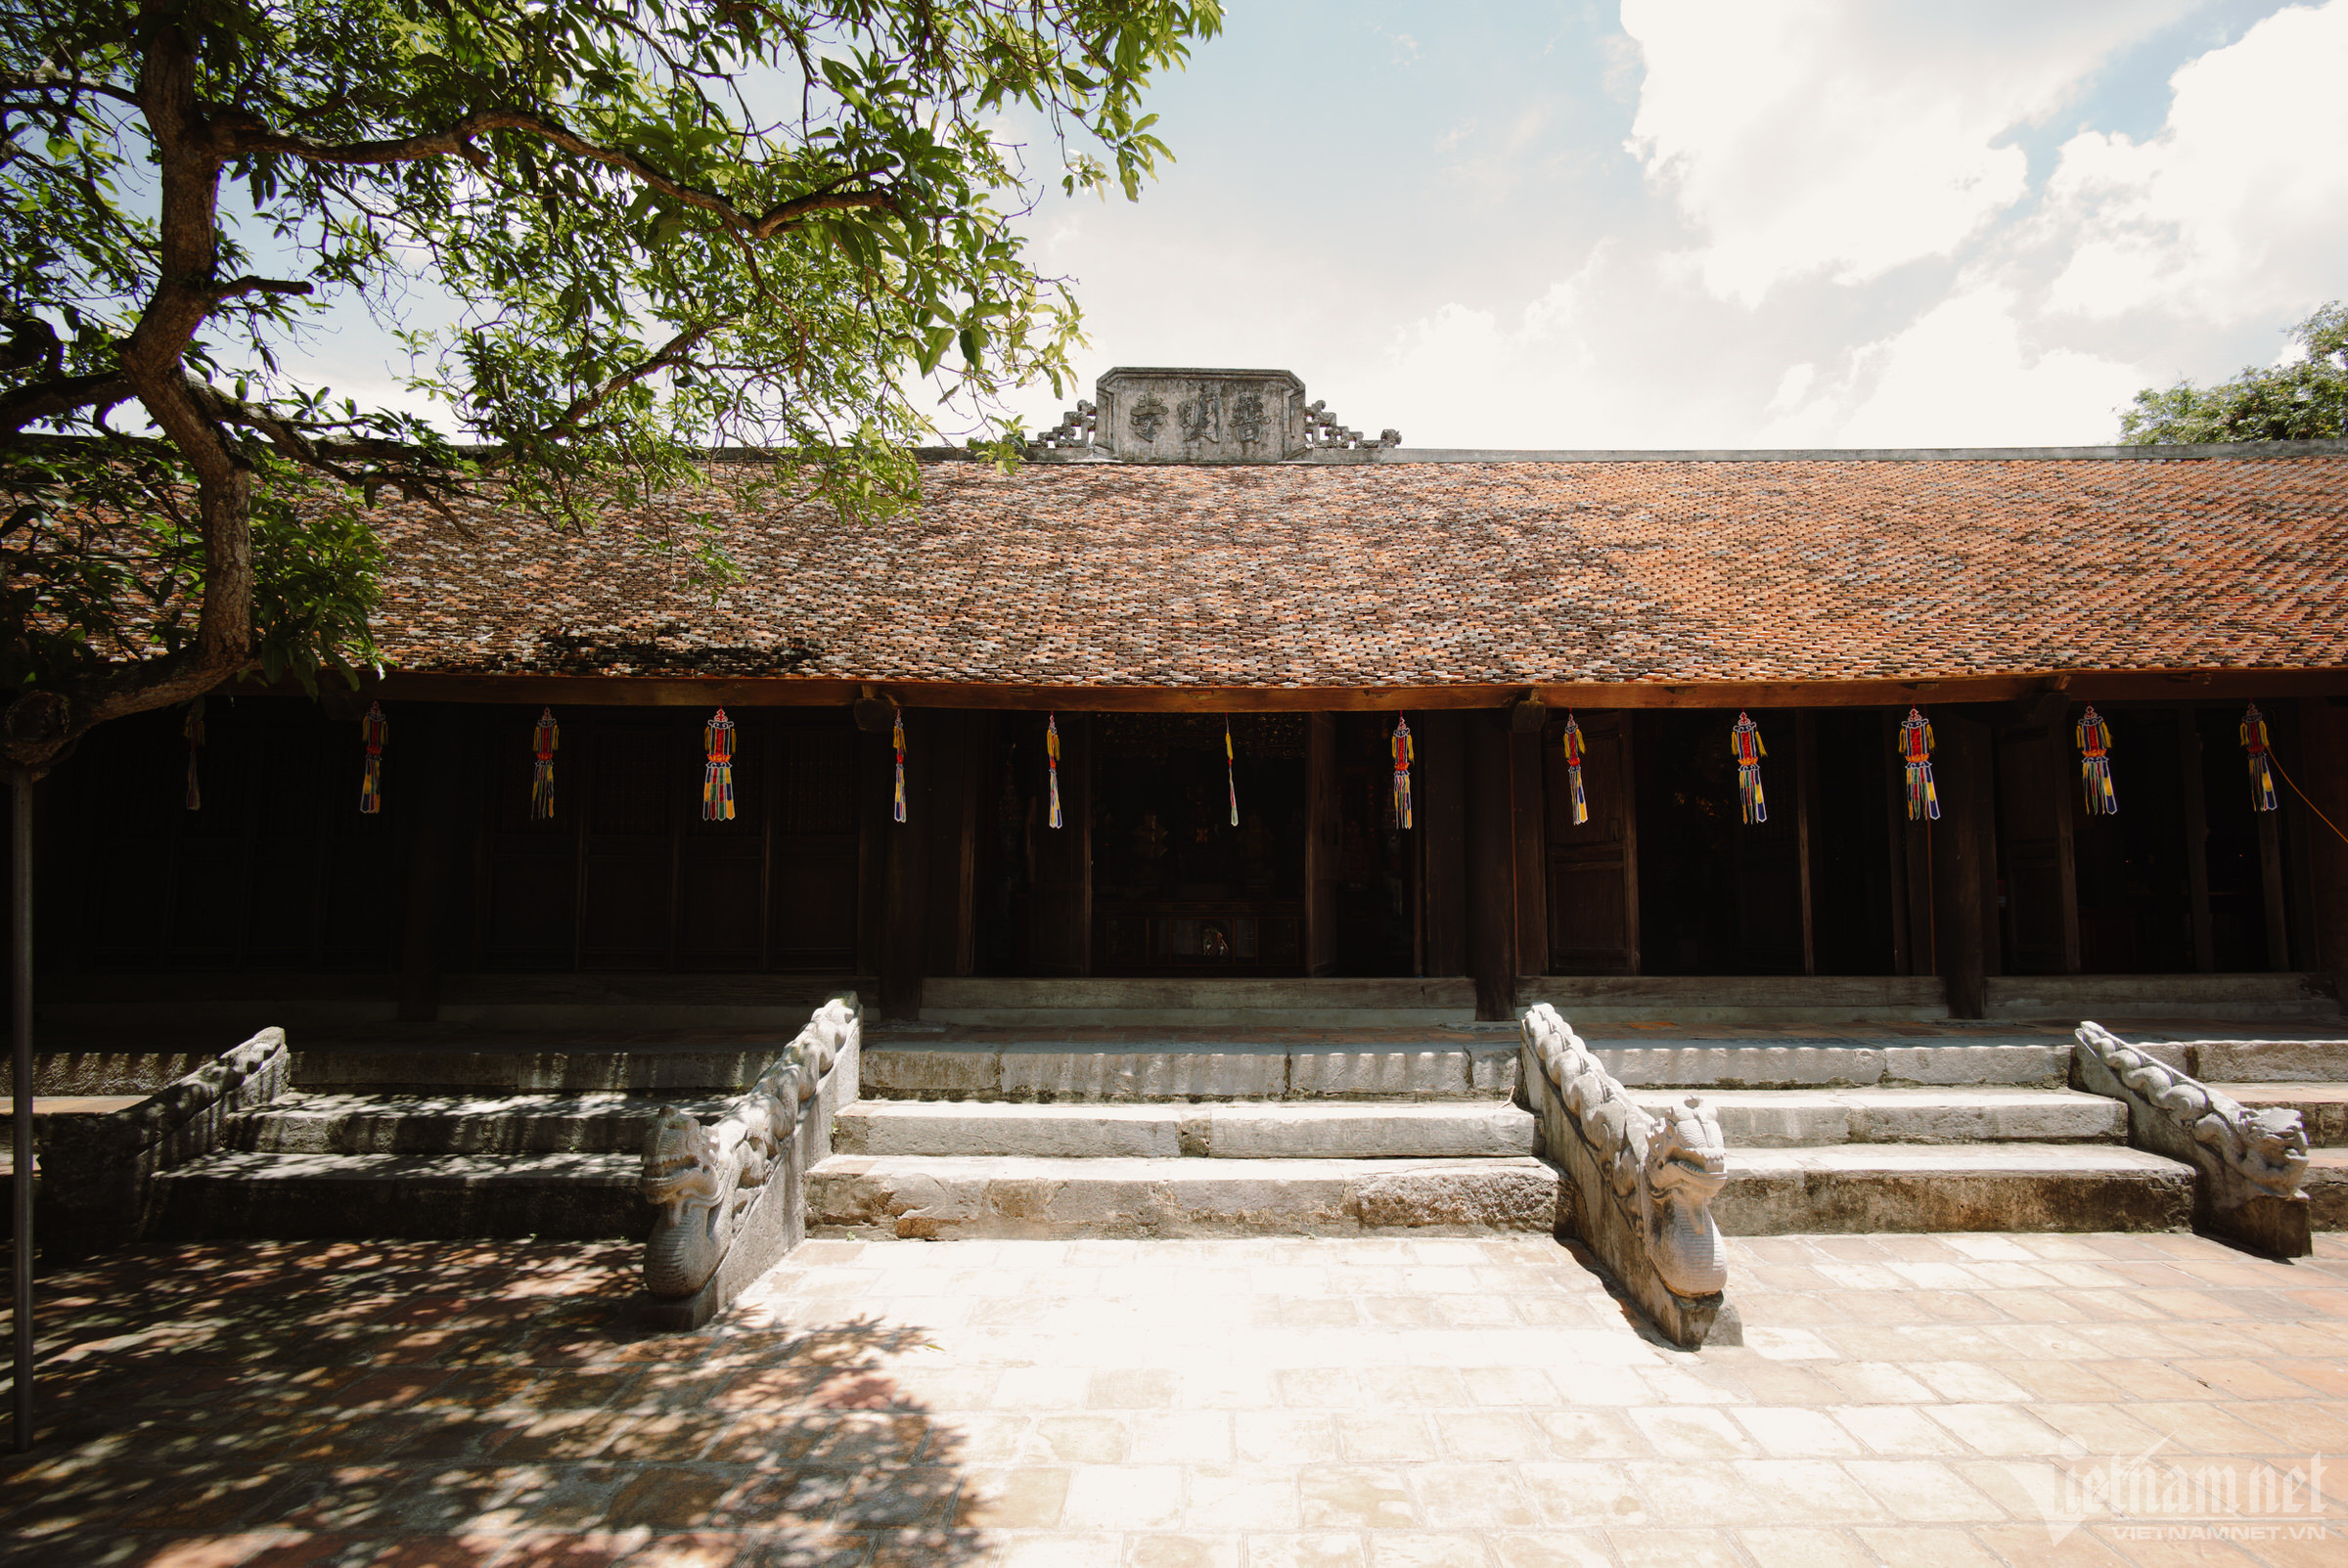 Ngôi chùa tháp 800 năm tuổi xanh mát tuyệt đẹp ngay gần Hà Nội